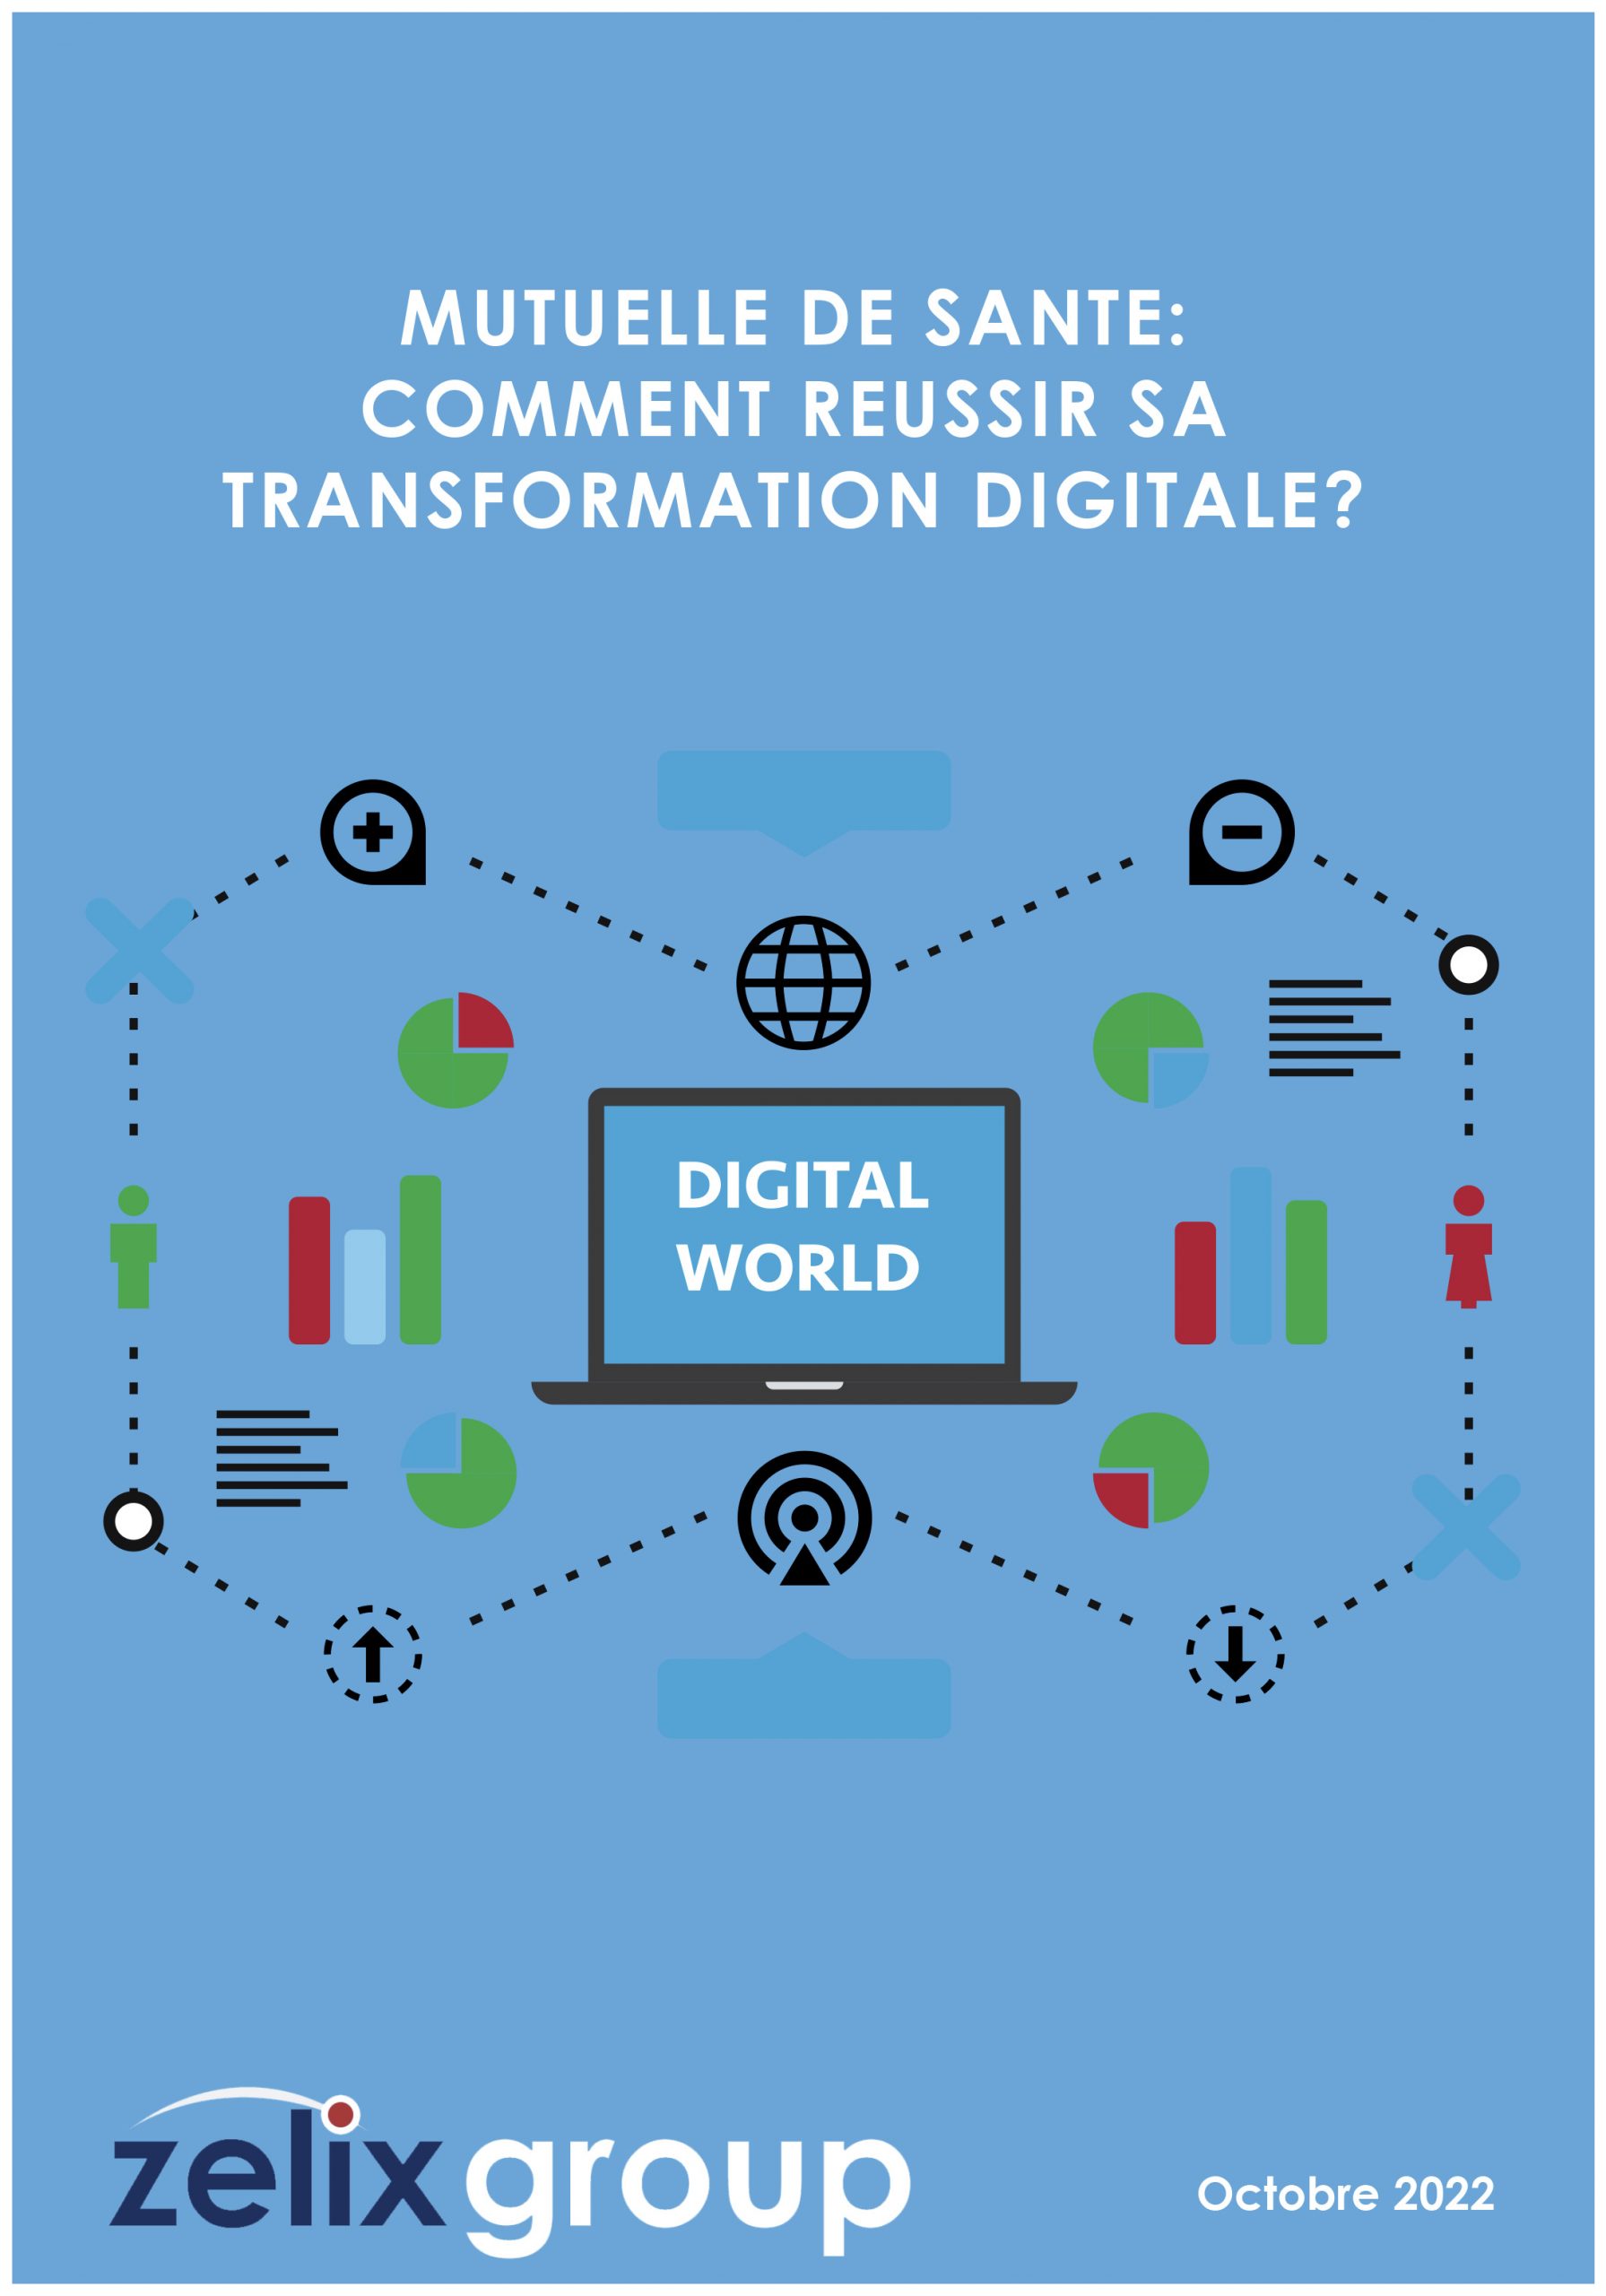 transformation digitale des mutuelles